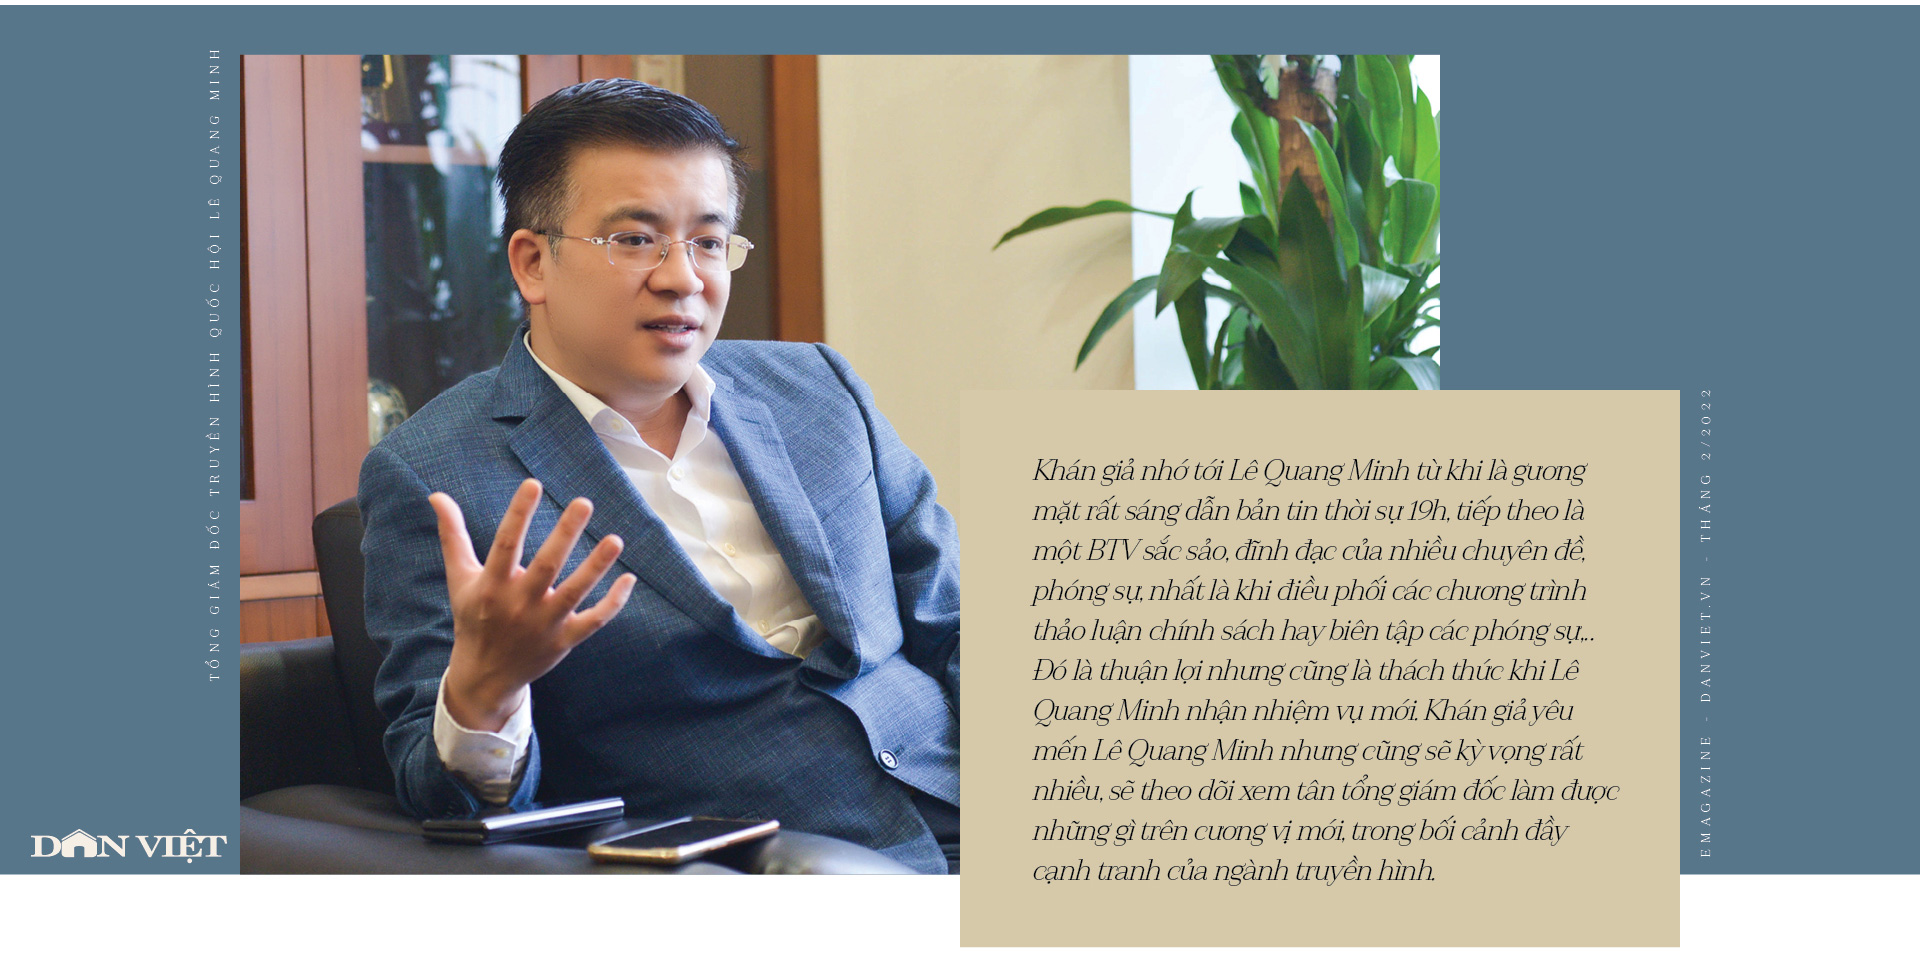 Tổng giám đốc kênh Truyền hình Quốc hội Lê Quang Minh: ‘Tôi muốn đưa câu chuyện chính luận gần gũi với đời sống’ - Ảnh 3.